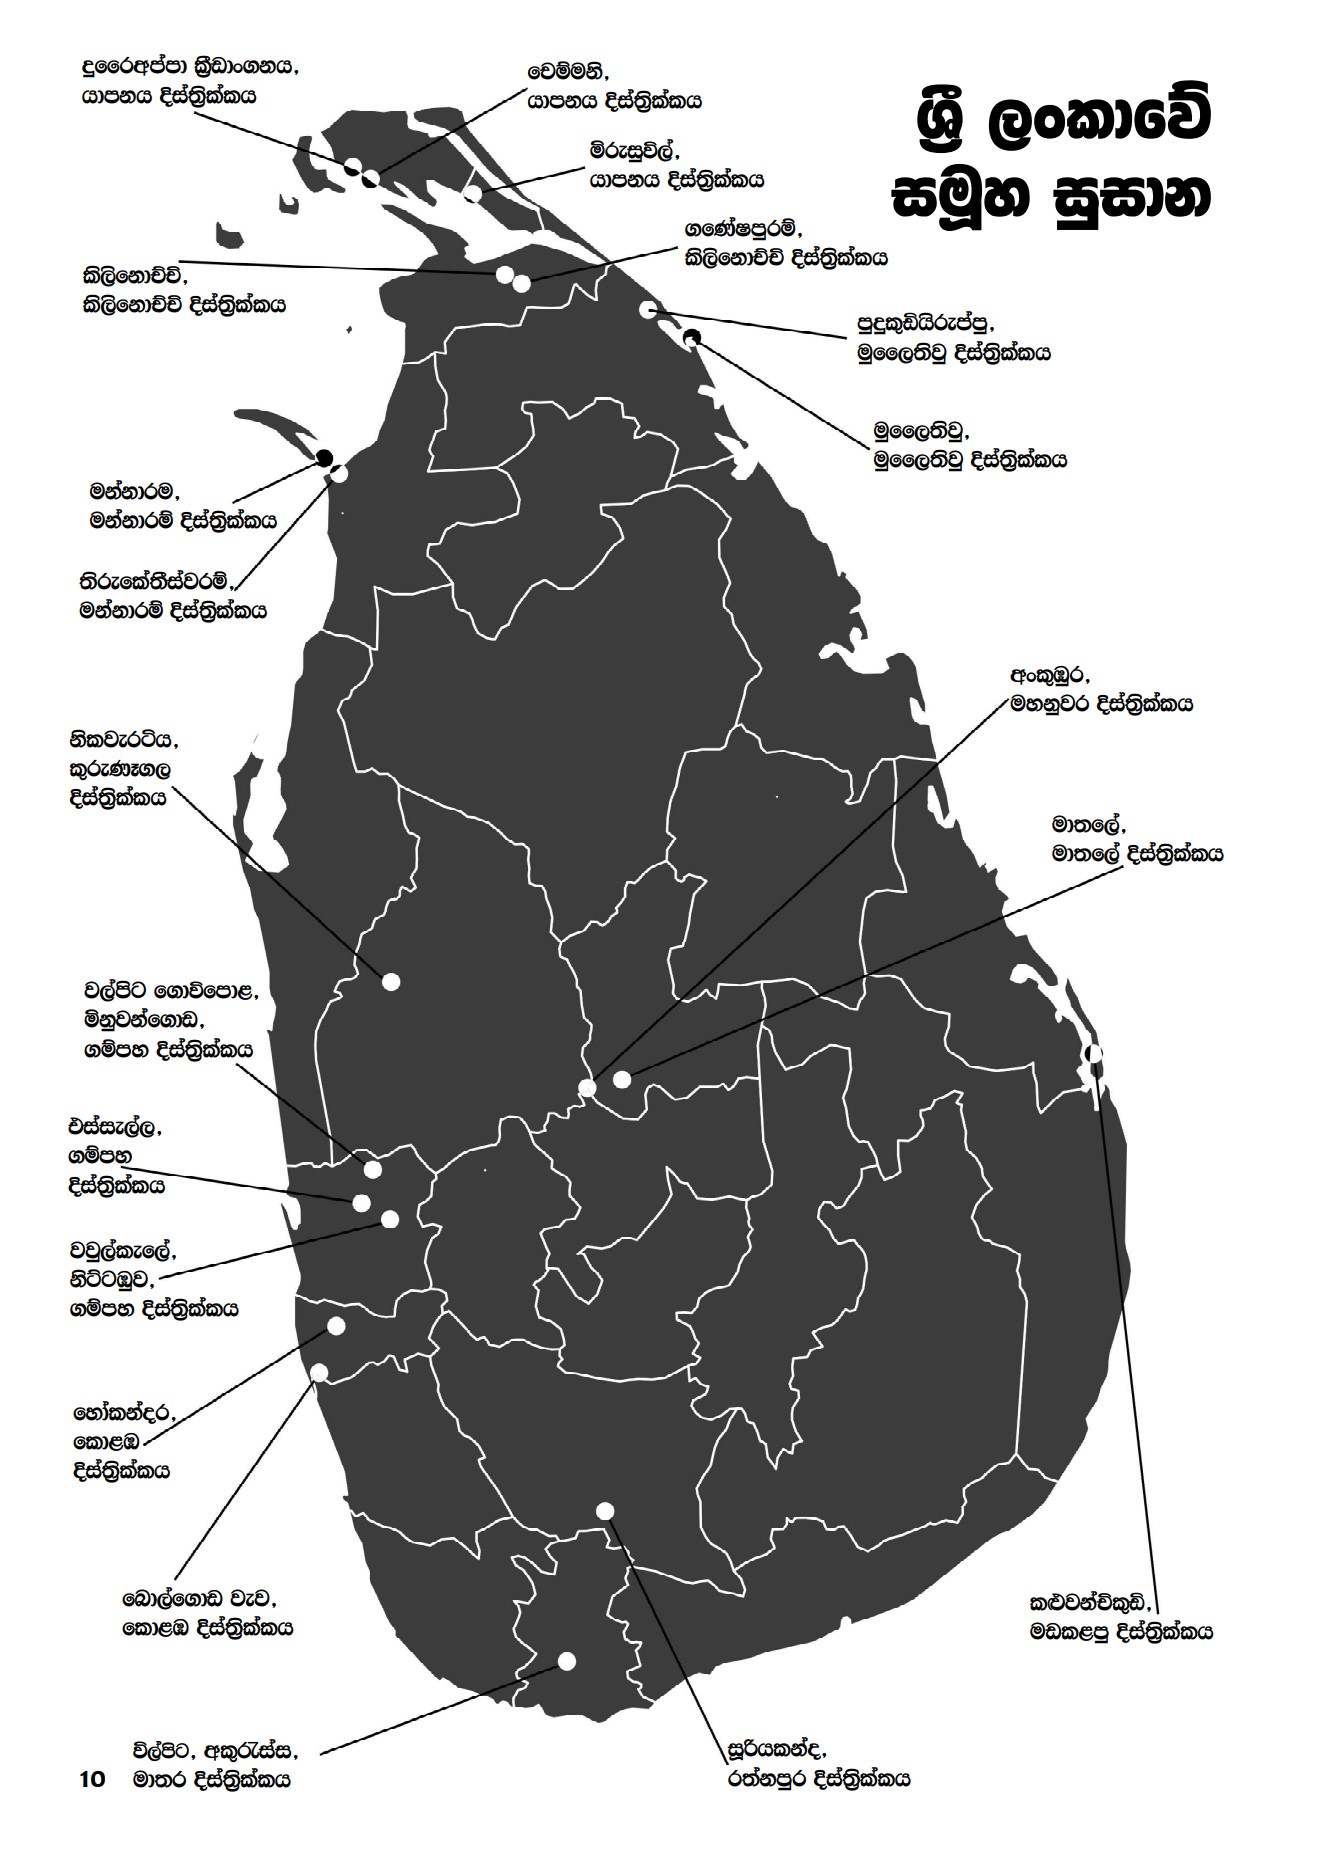 Map in Sinhala